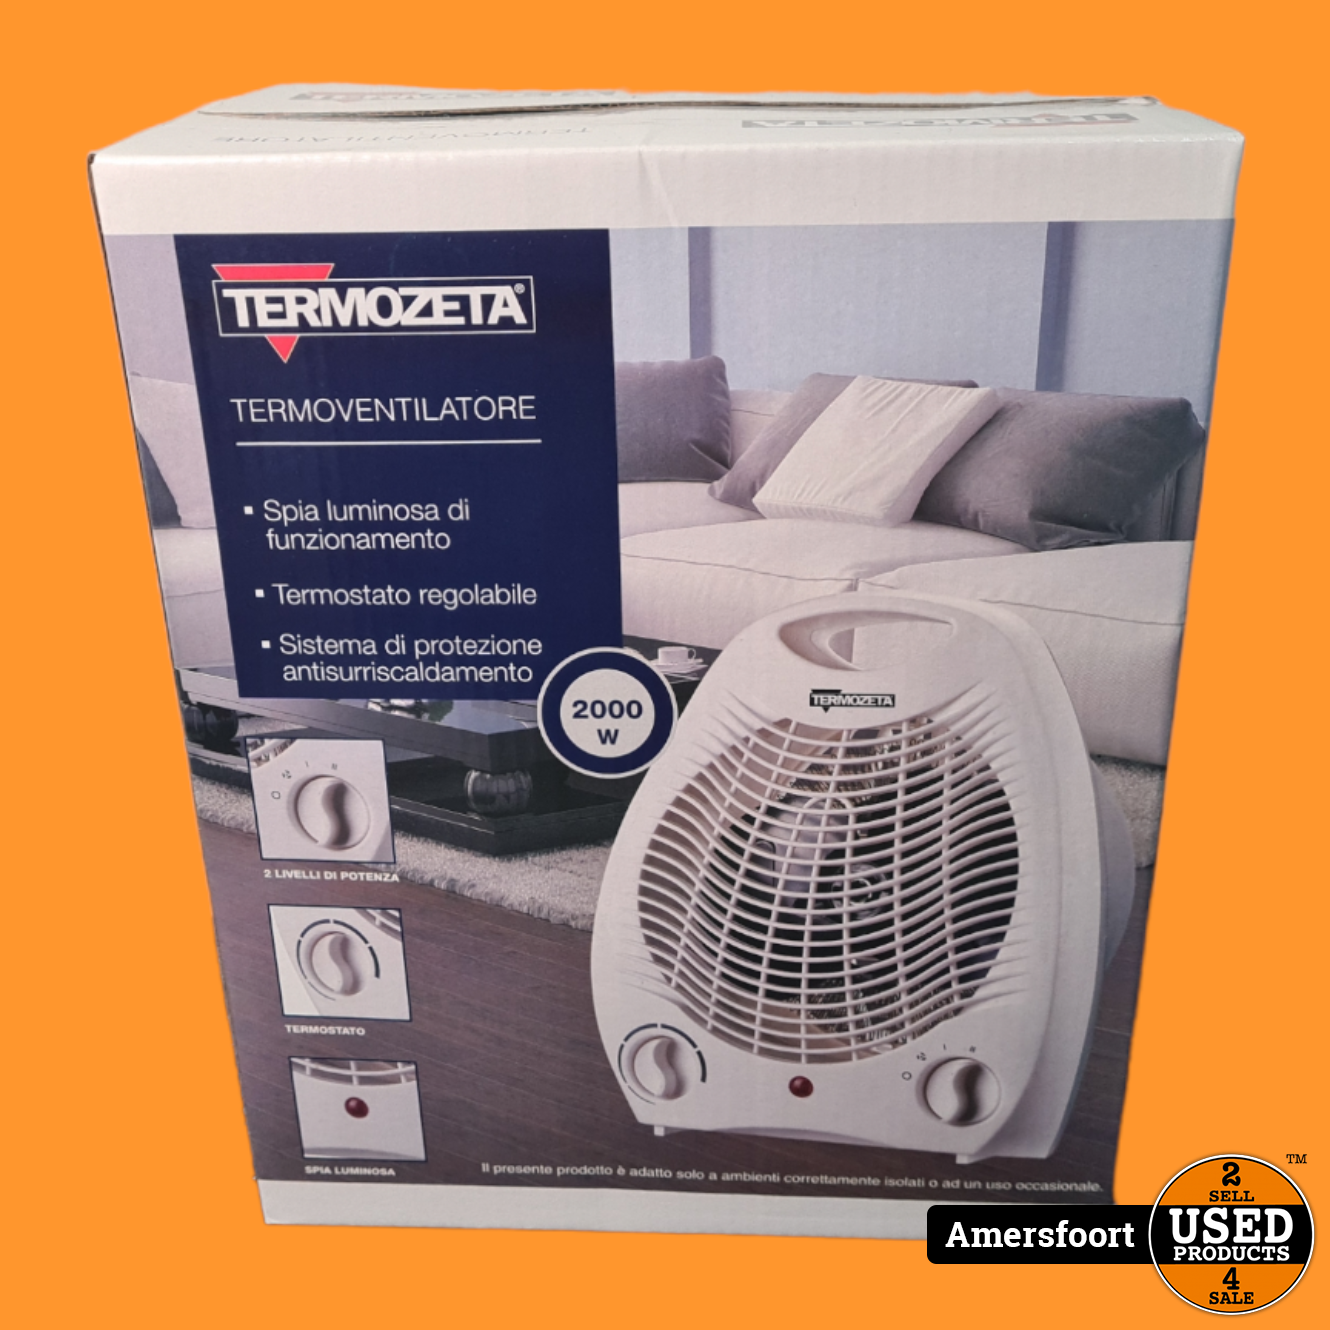 evenwicht spellen Bestaan Termozeta 2000Watt Ventilator | Verwarming - Used Products Amersfoort